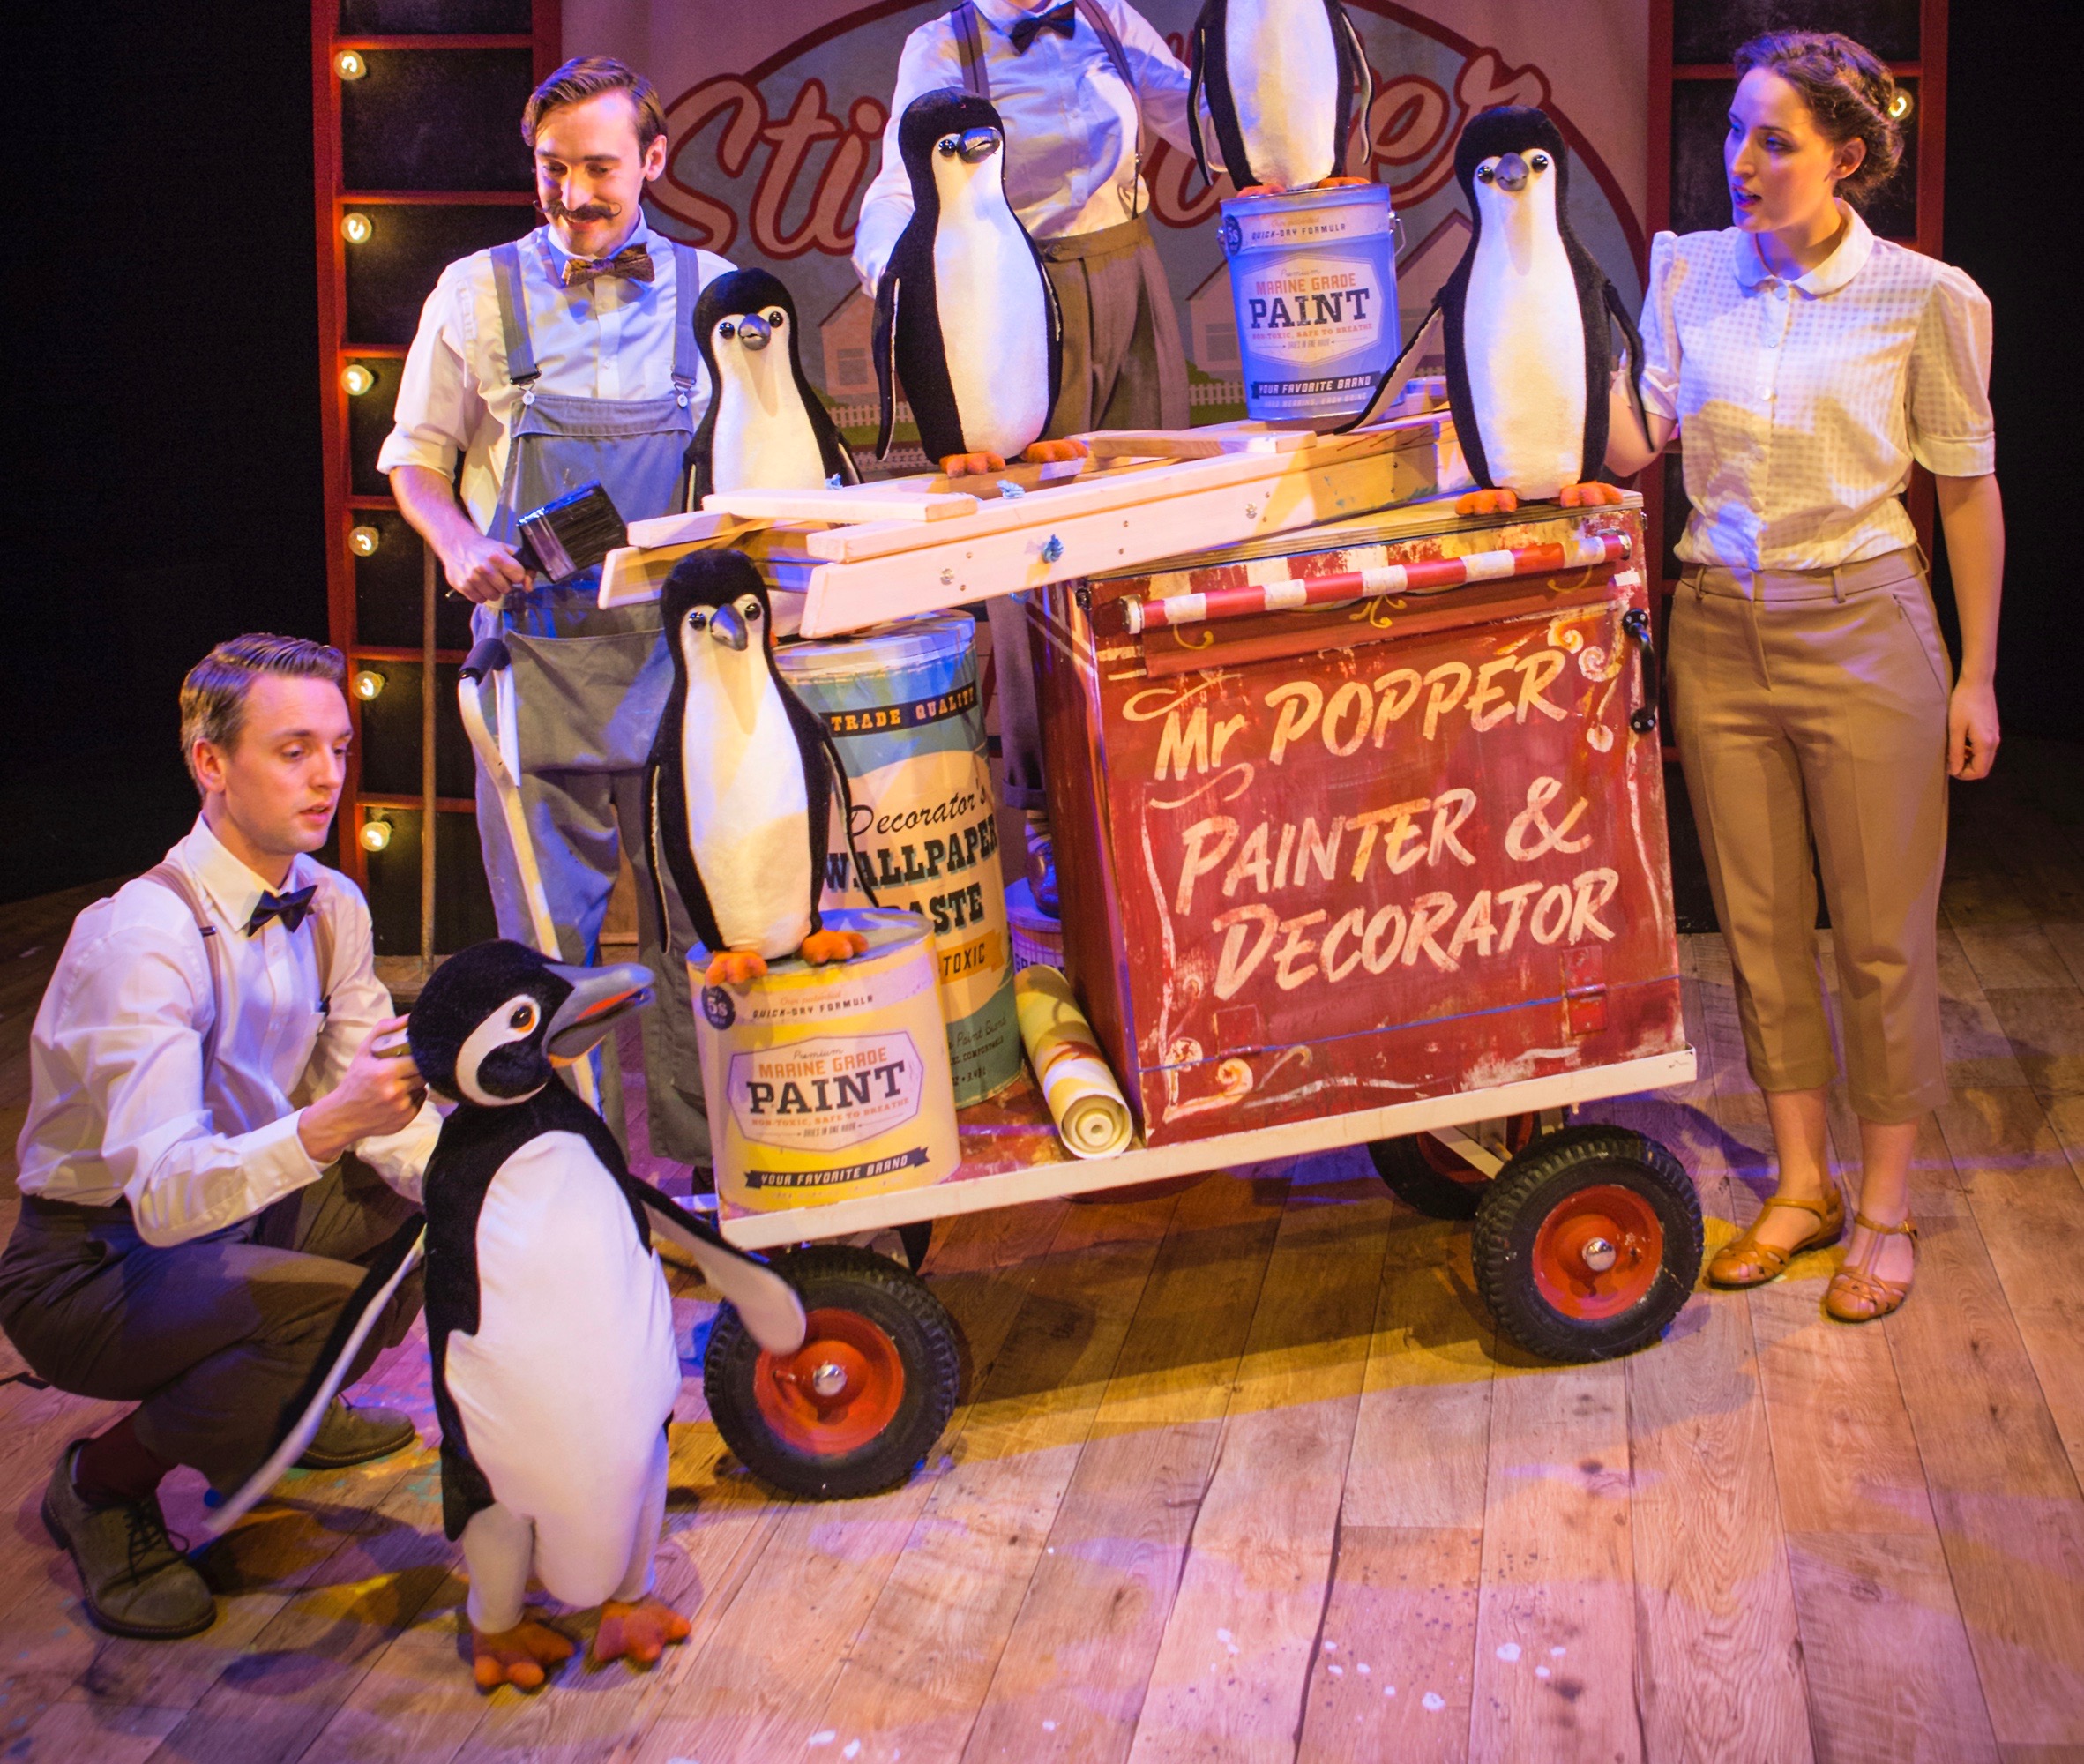 Cast members in Mr Popper's Penguins